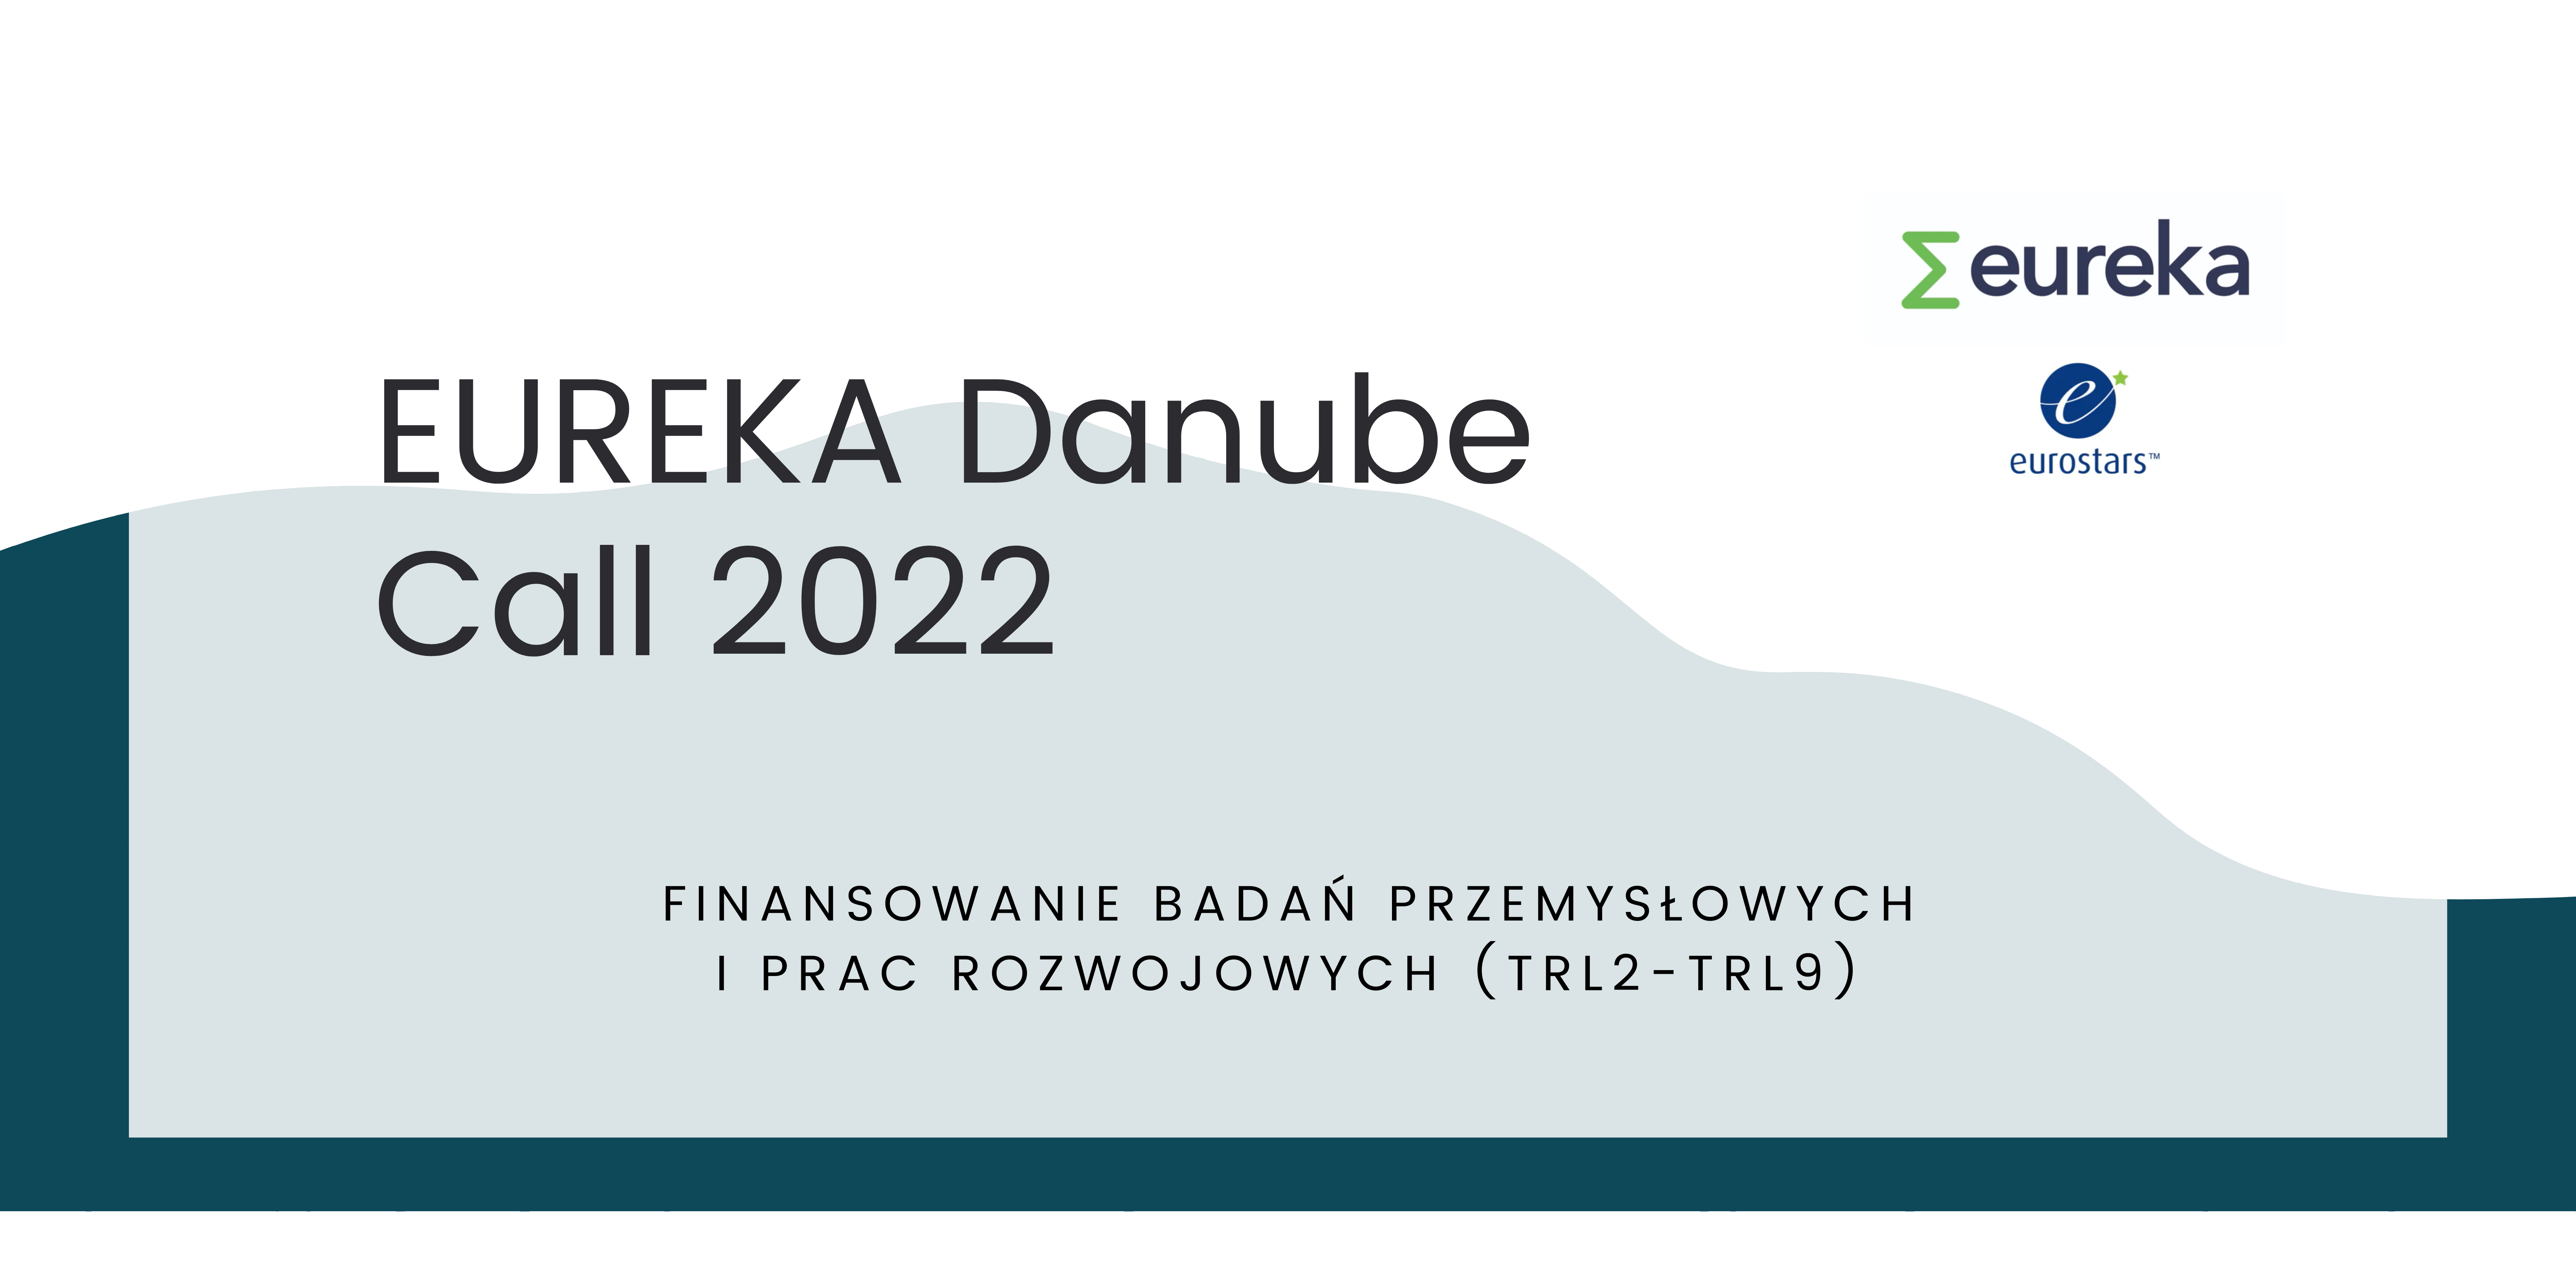 eureka danube call 2022